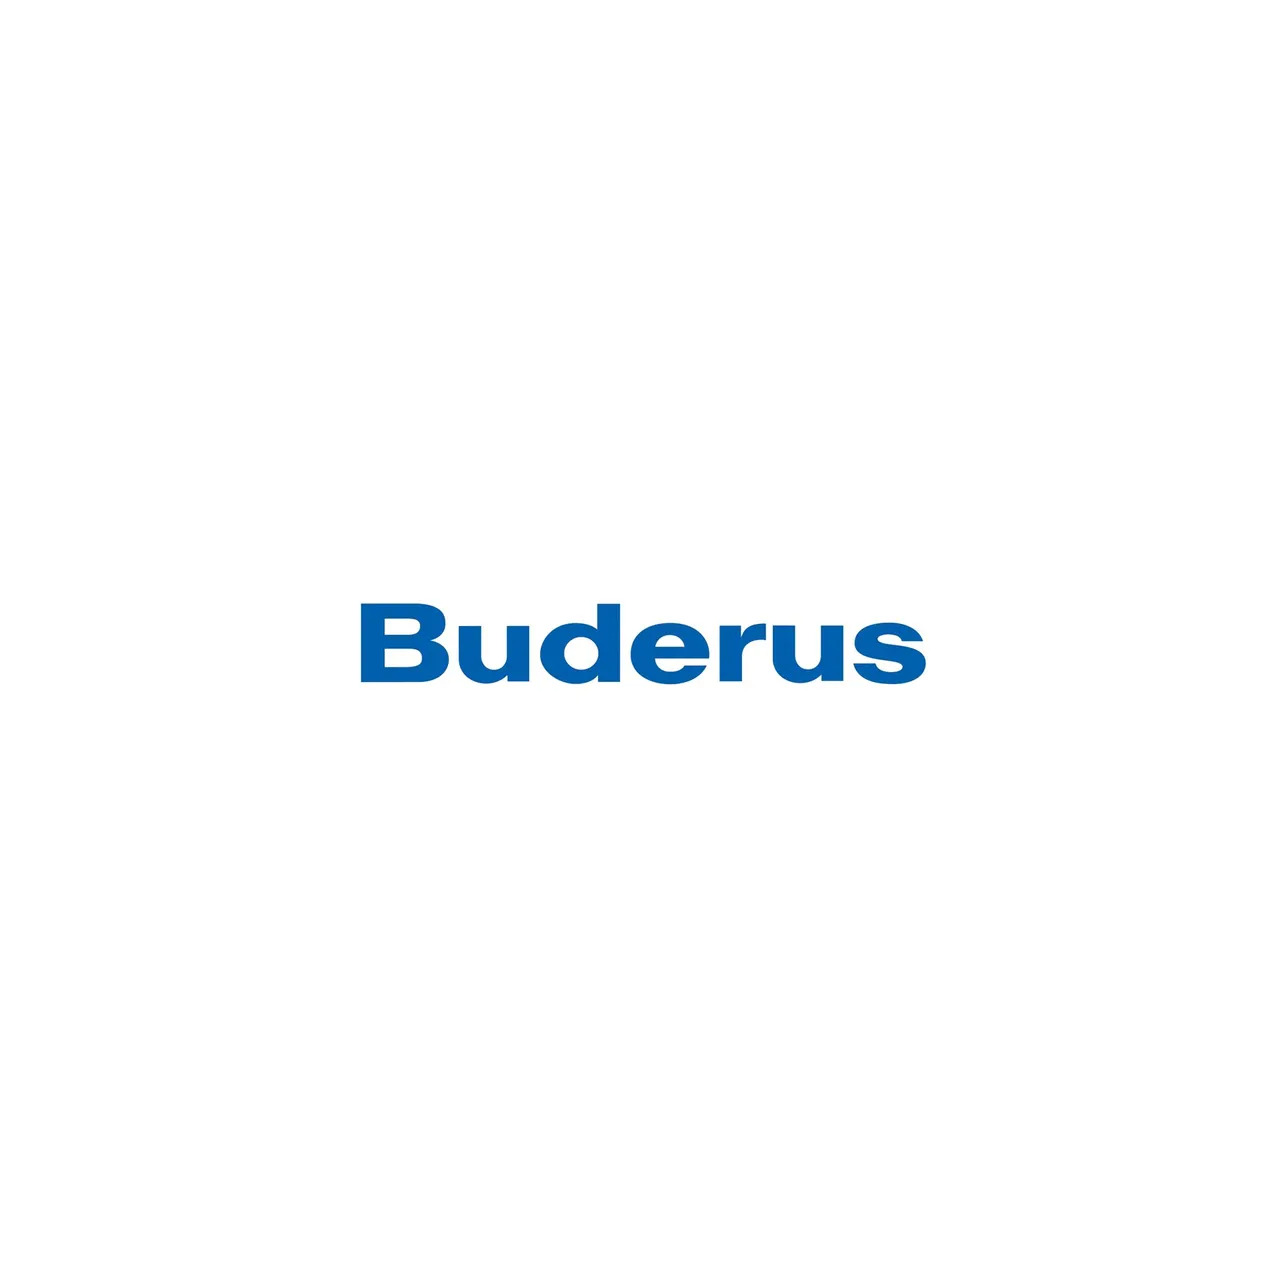 buderus-logo-1280w